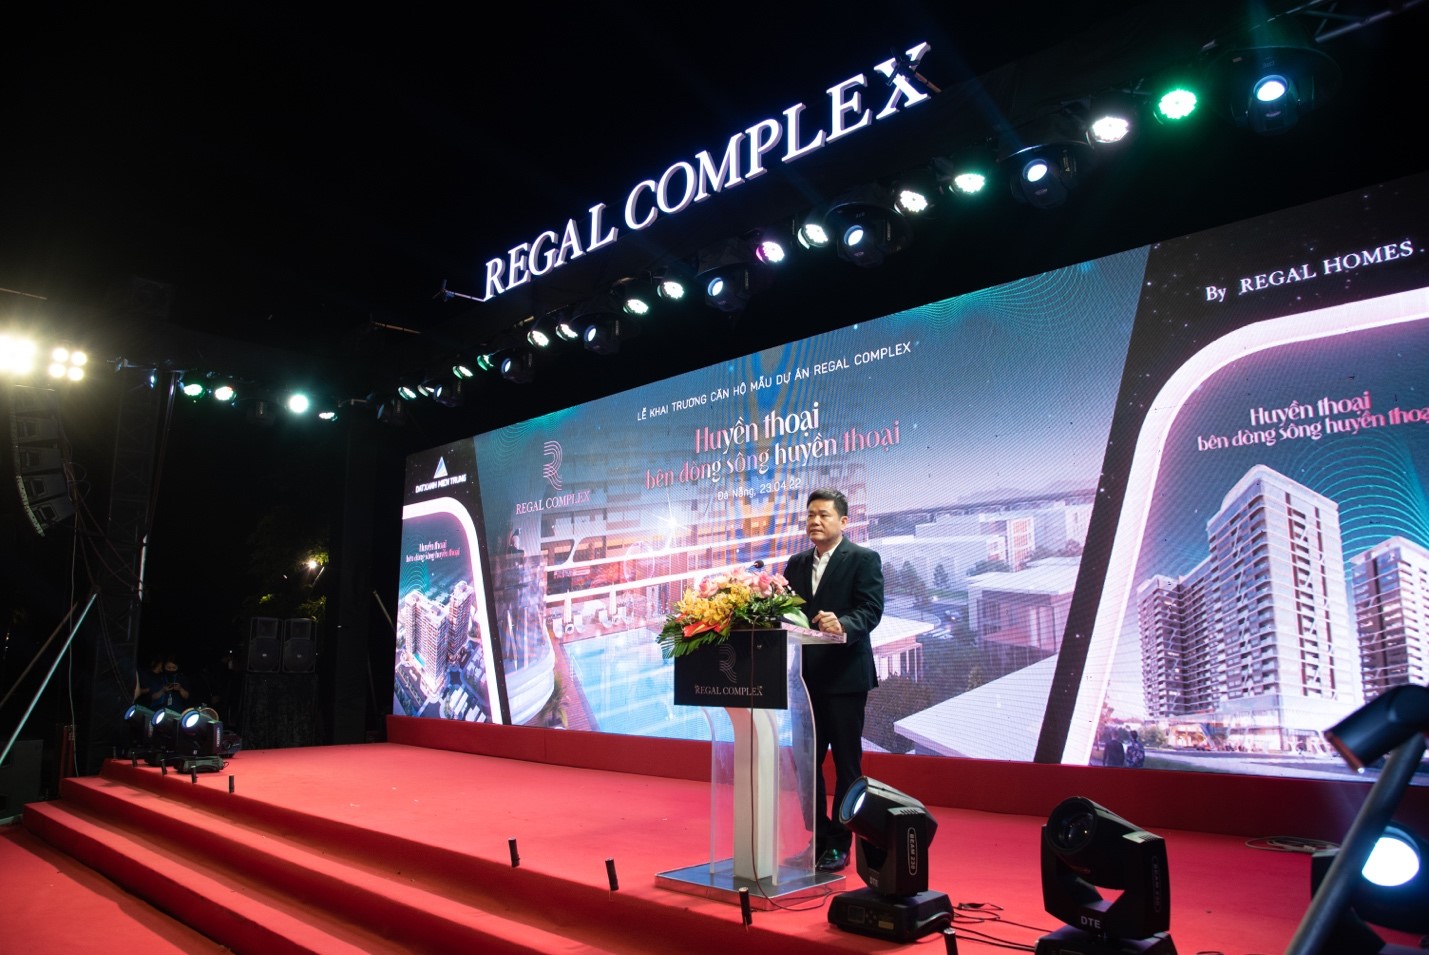 Đất Xanh Miền Trung khai trương căn hộ mẫu Regal Complex, mở rộng bộ sưu tập Regal Homes - Viet Nam Smart City